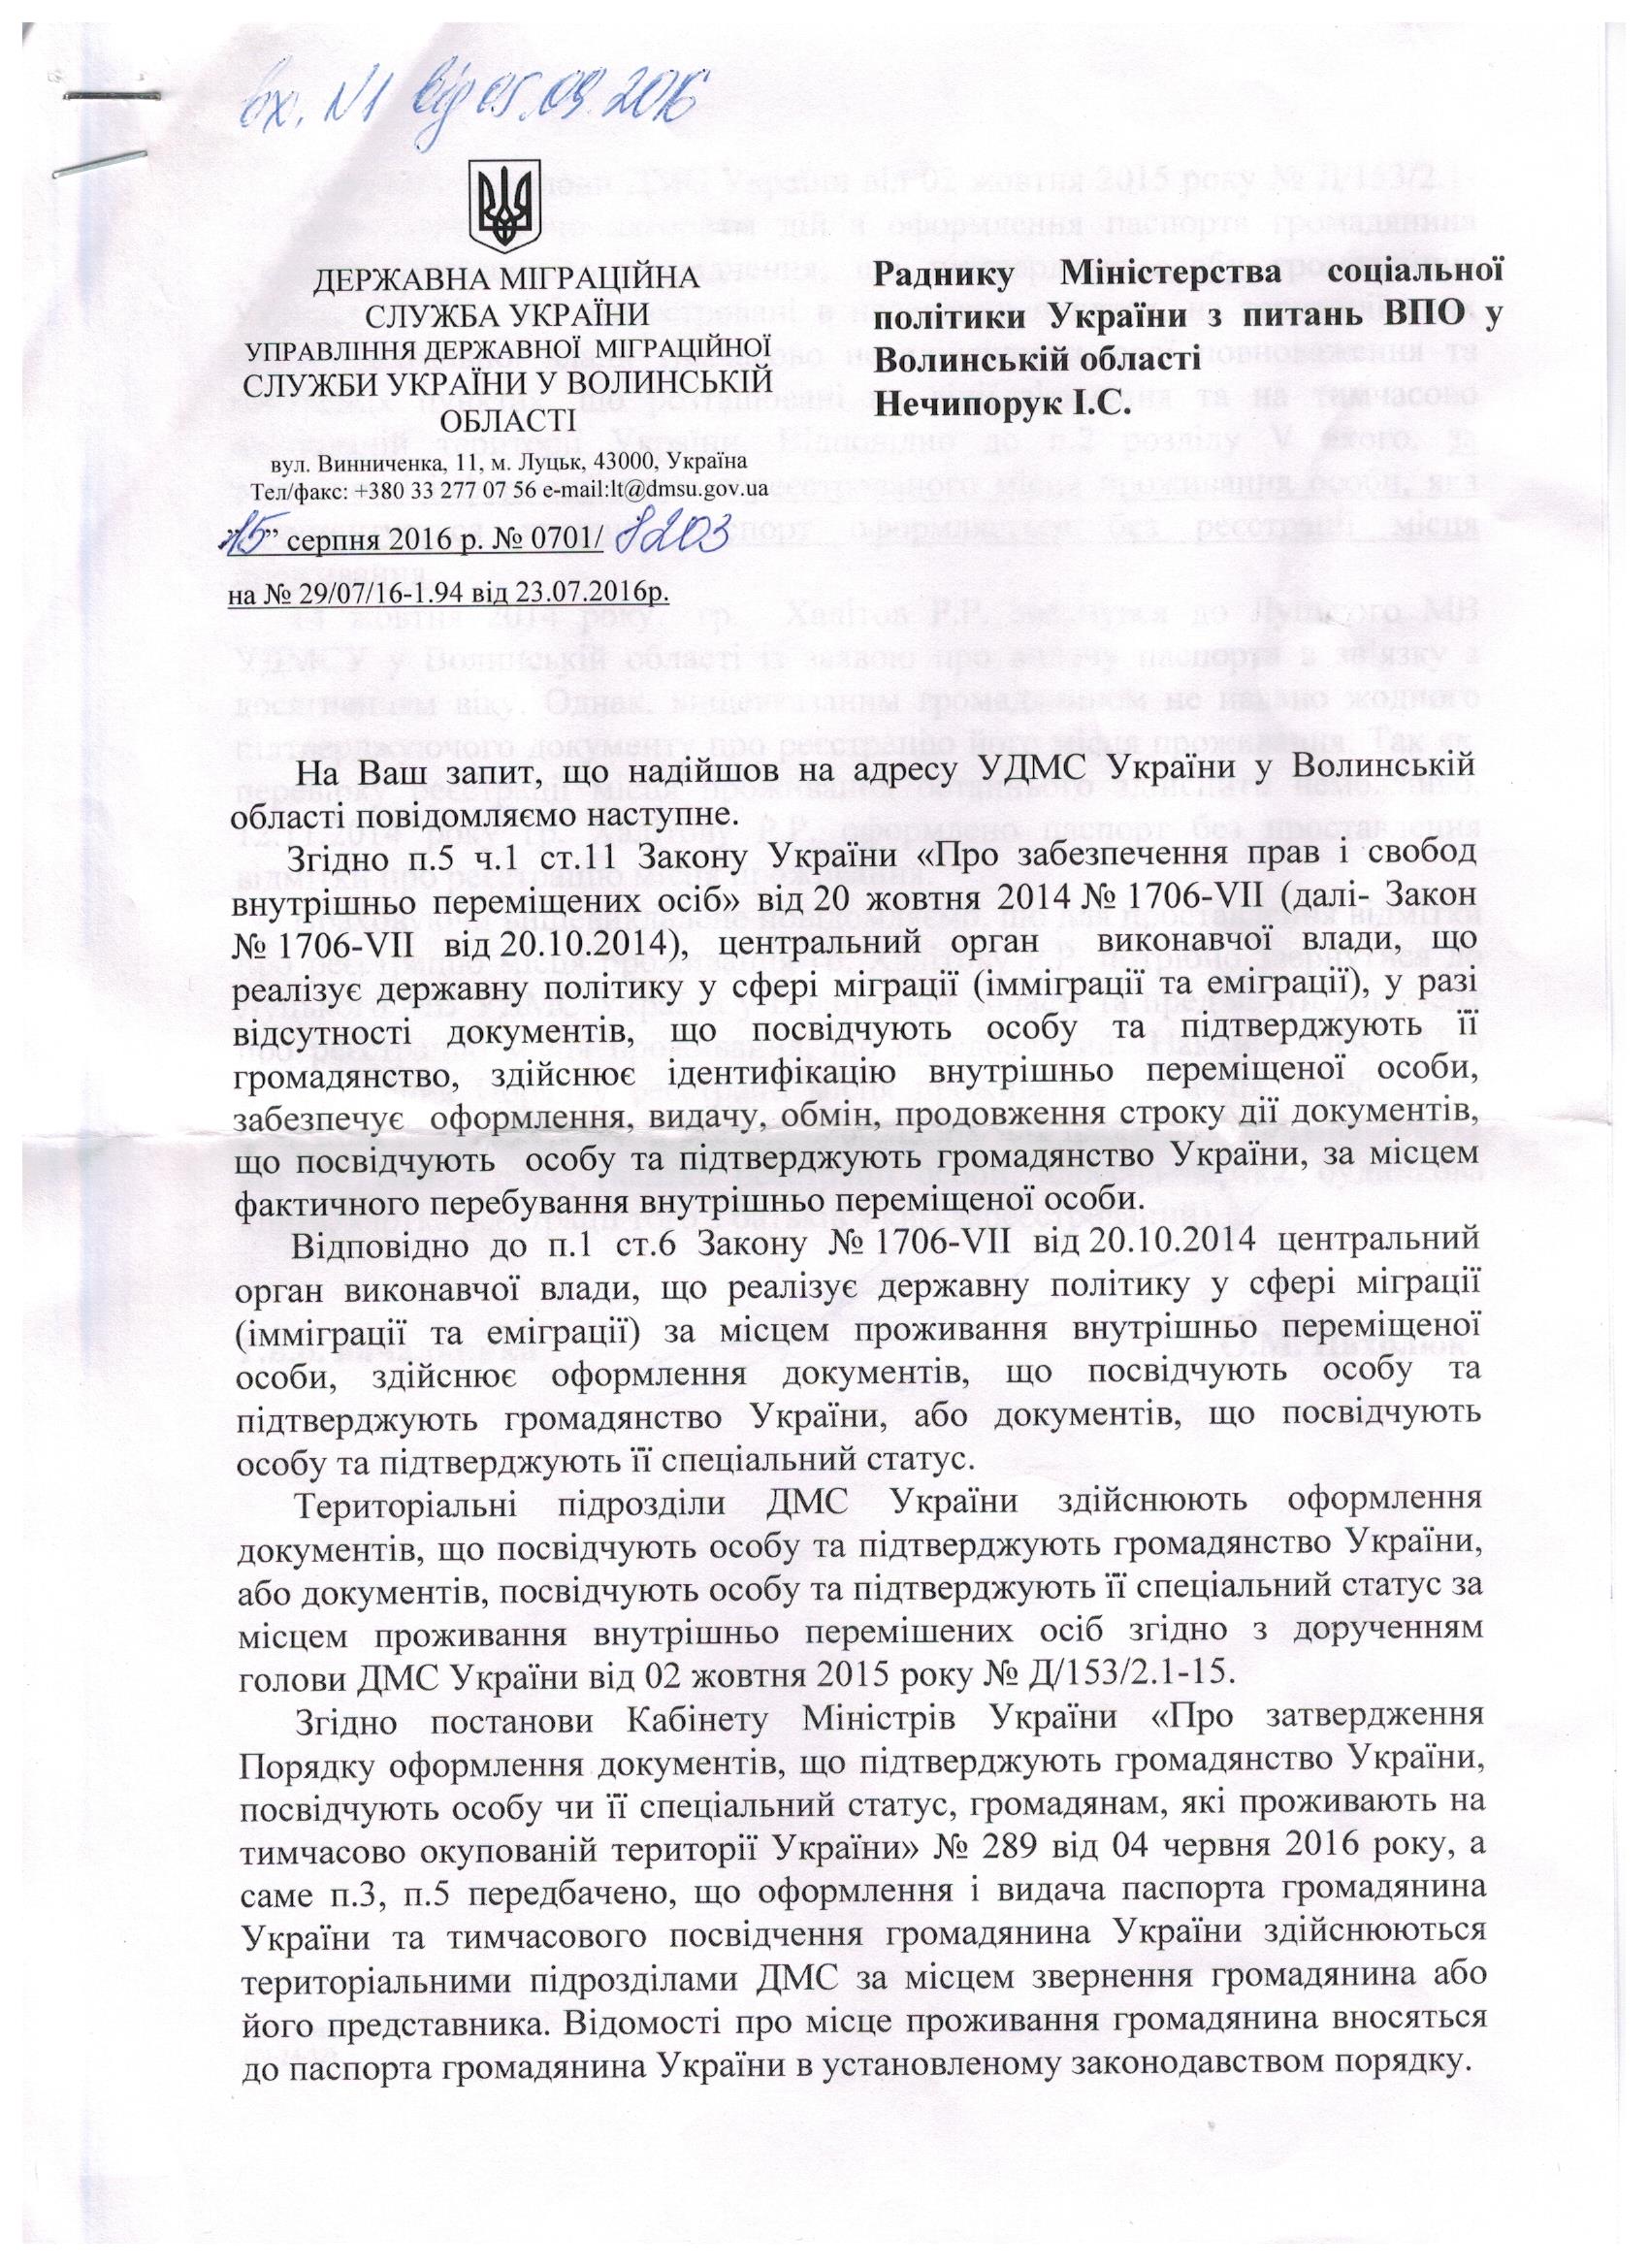 Українські чиновники рекомендують їхати в окупований Крим за штампом про реєстрацію - картинка 2